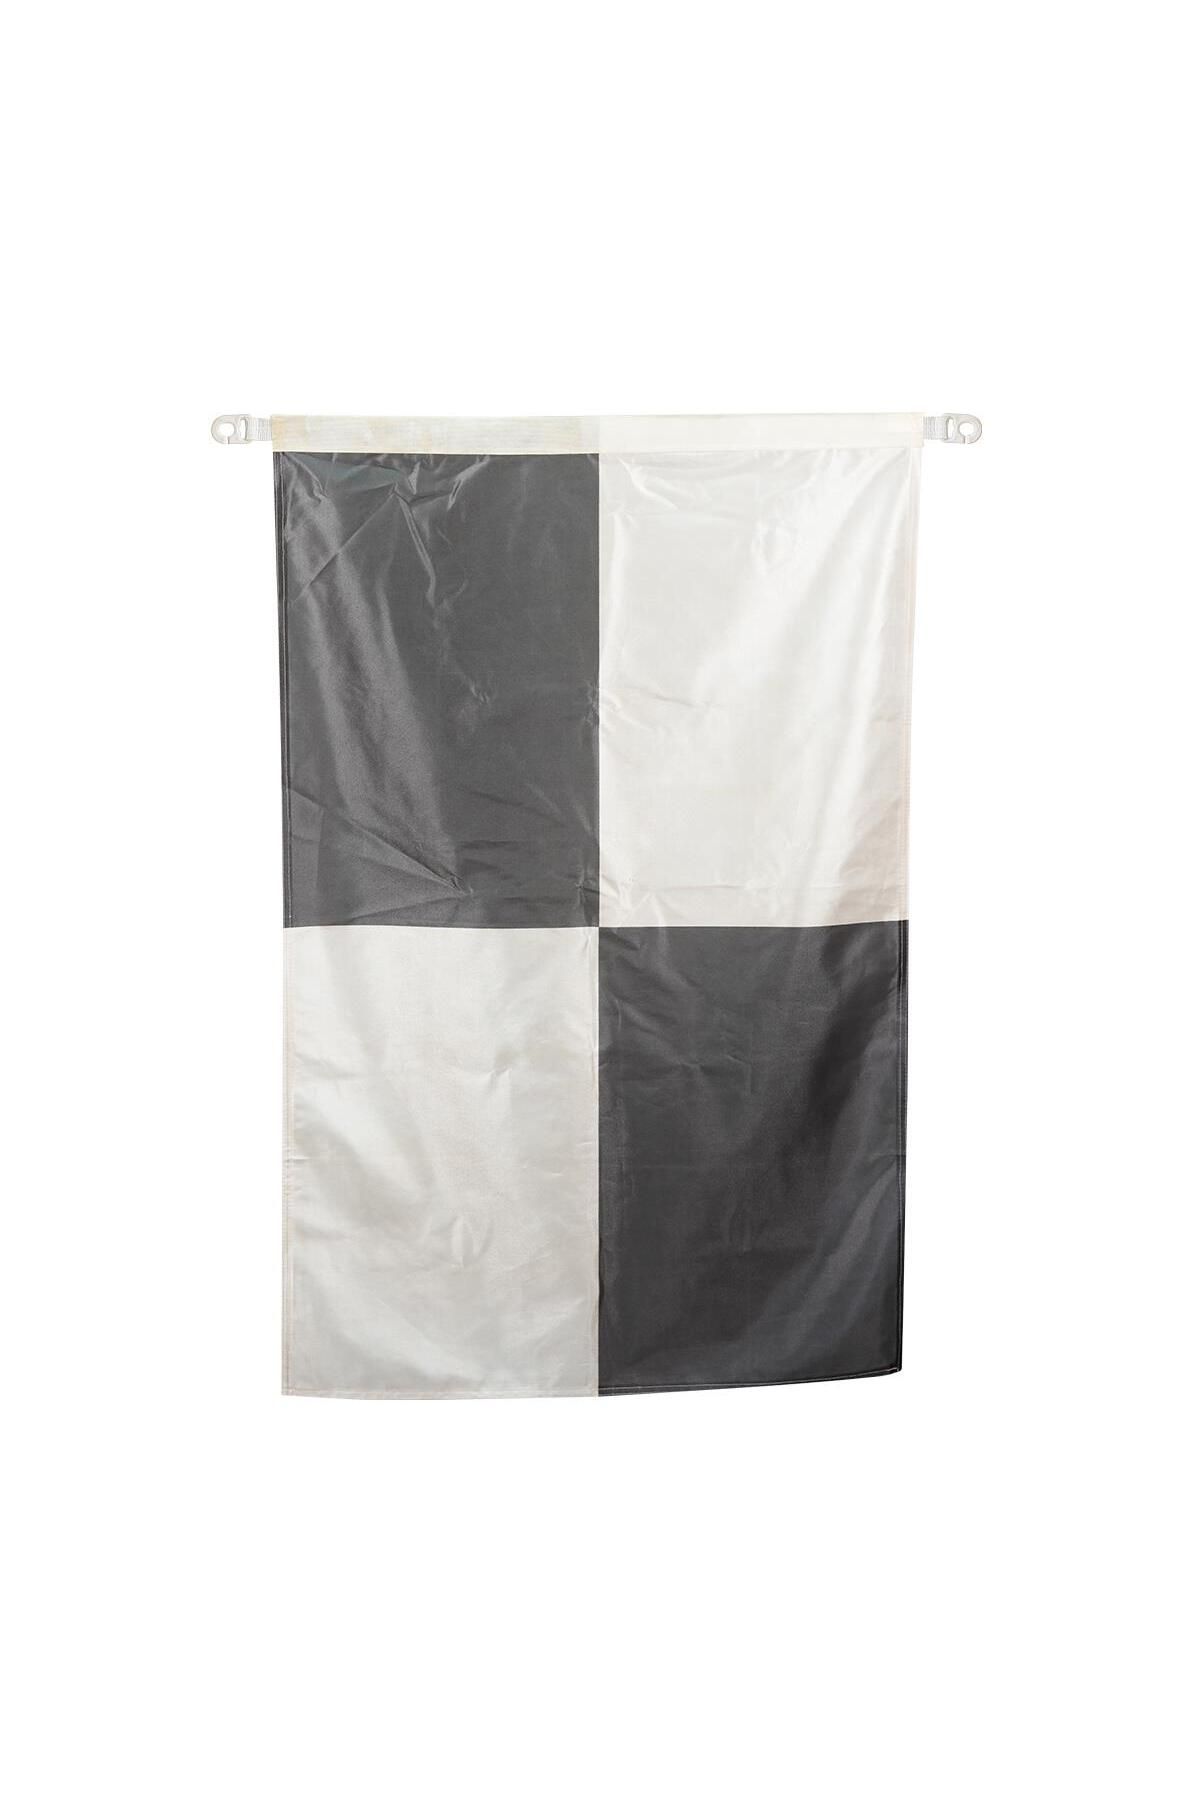 OCEANMARİNE Cankurtaran Bayrağı (siyah&beyaz Büyük Damalı75x100)